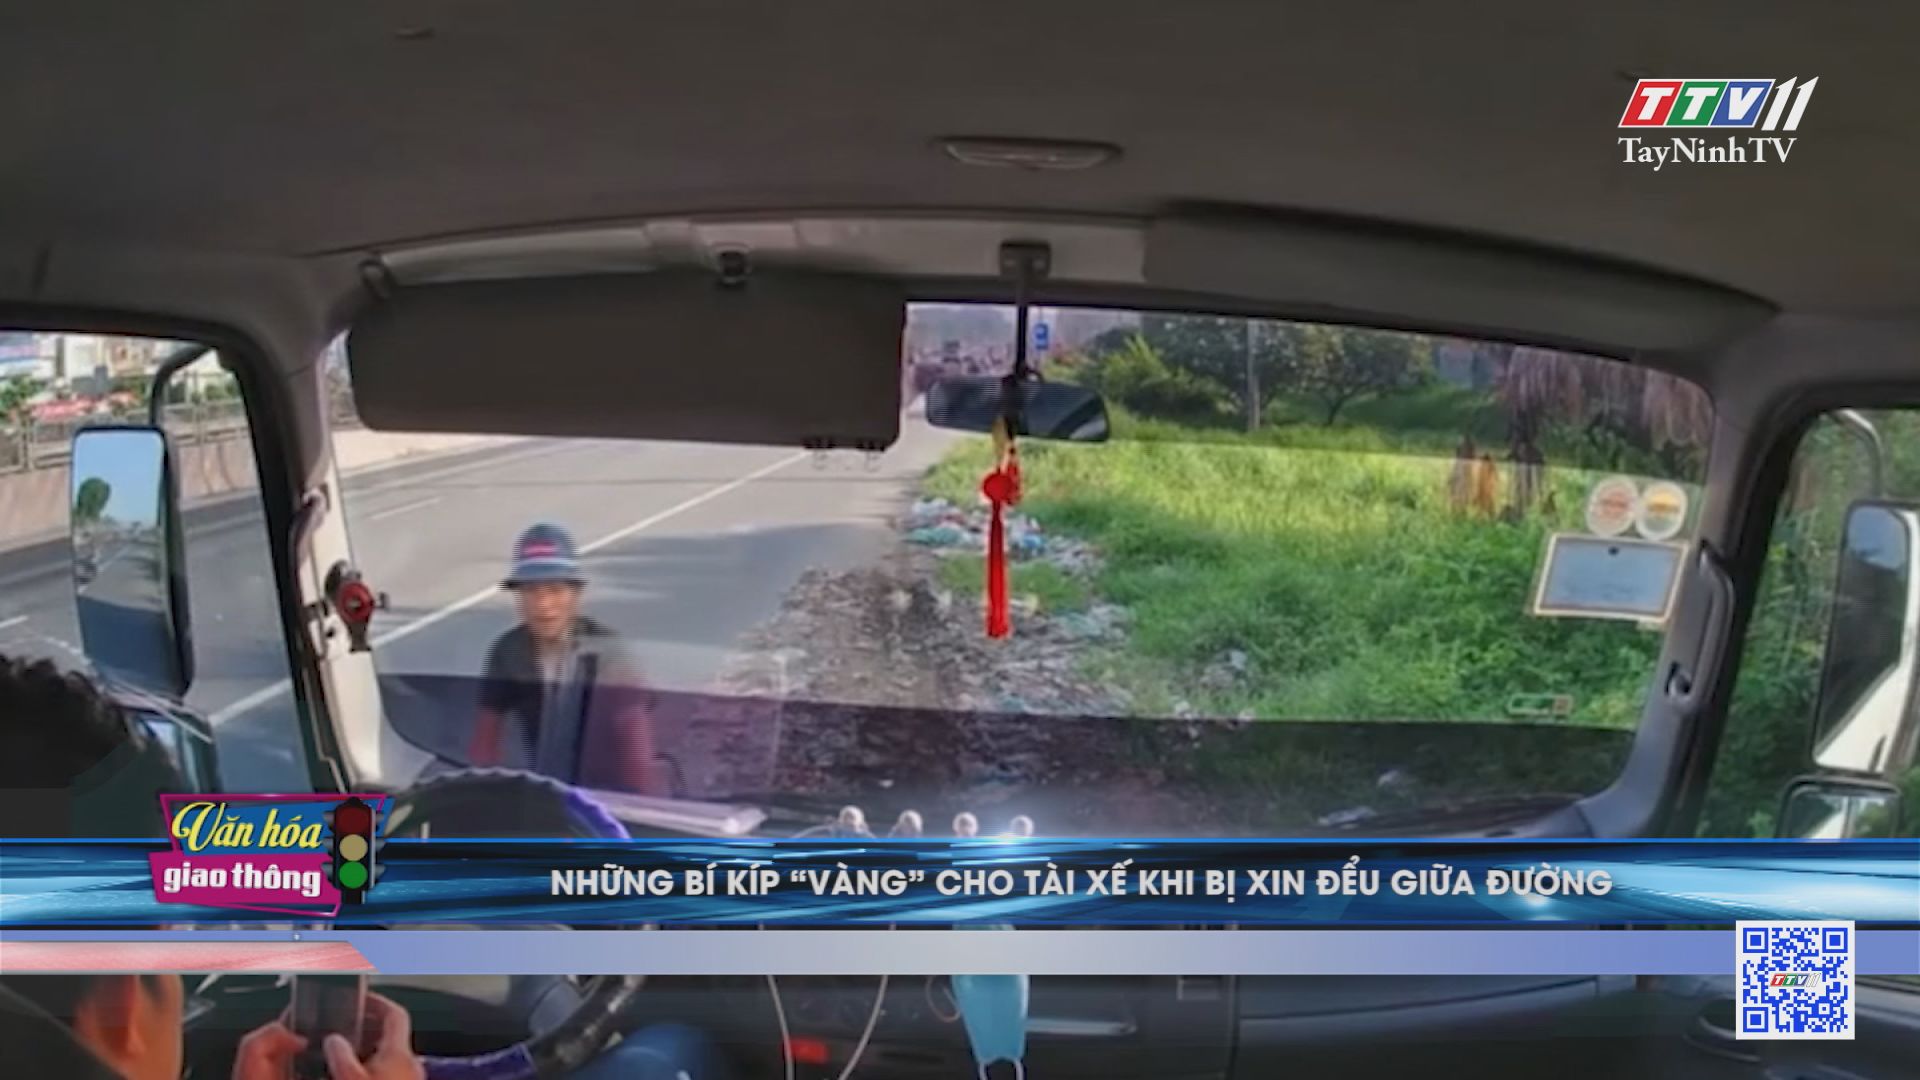 Những bí kíp vàng cho tài xế khi bị xin đểu giữa đường | Văn hóa giao thông | TayNinhTV